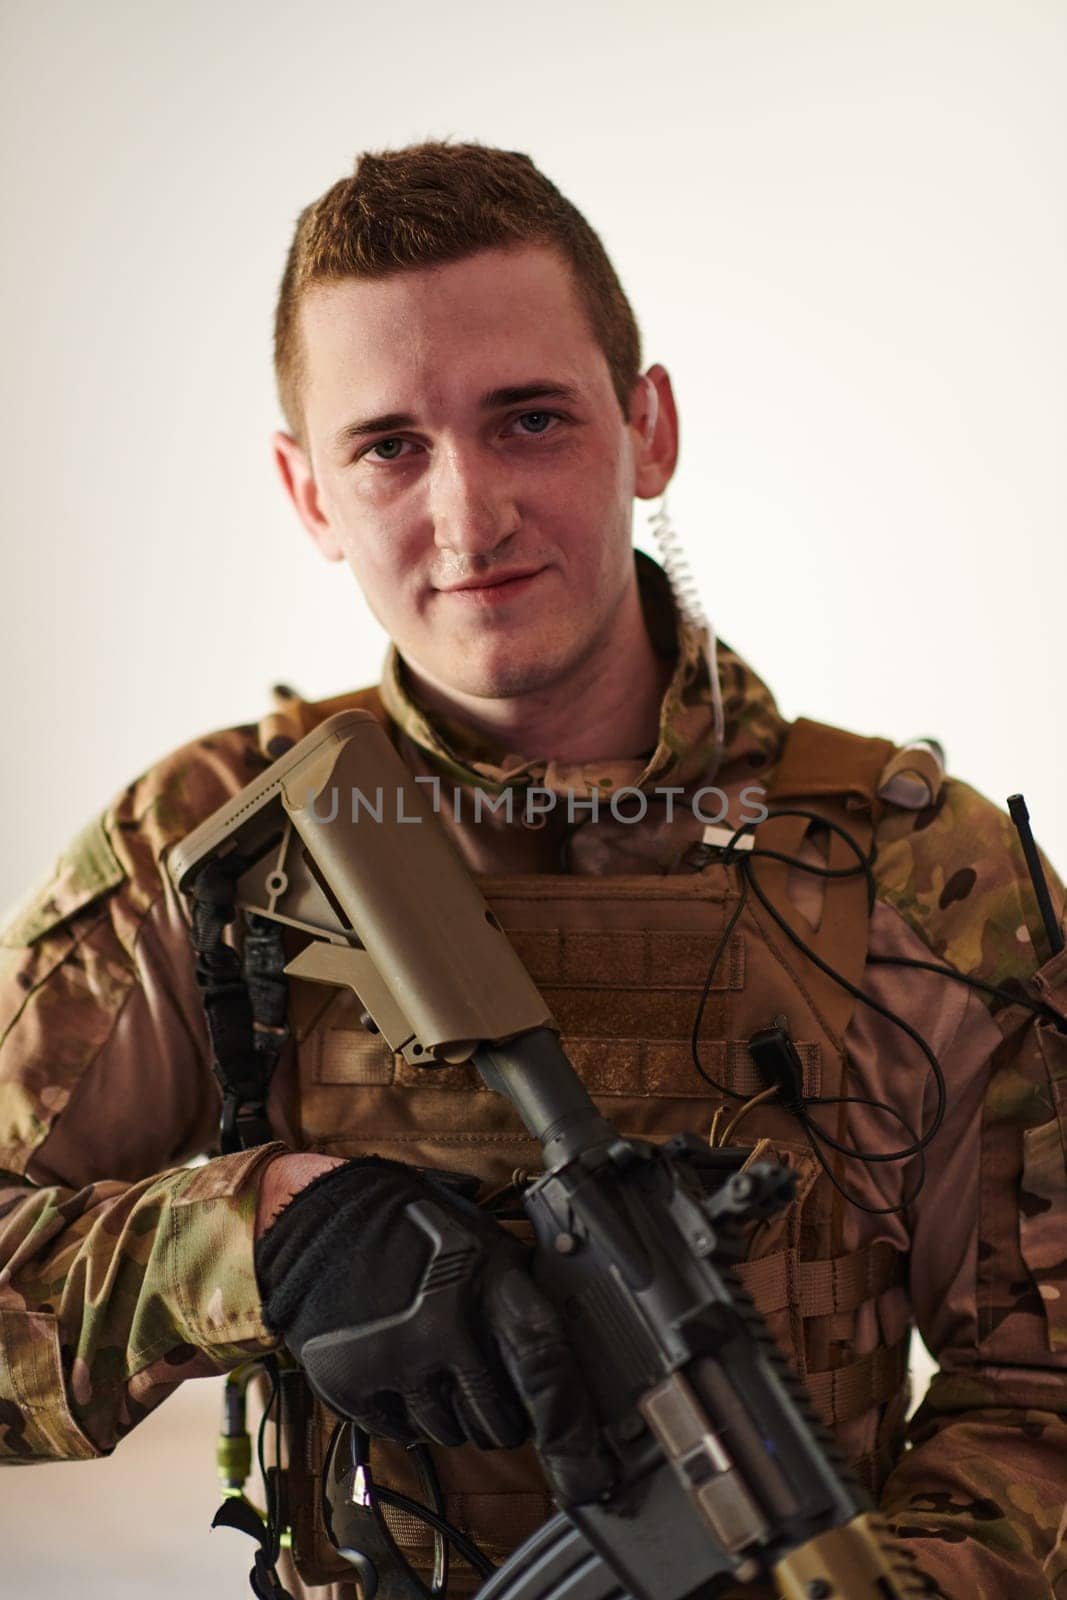 Modern warfare soldier portrait in urban environment.